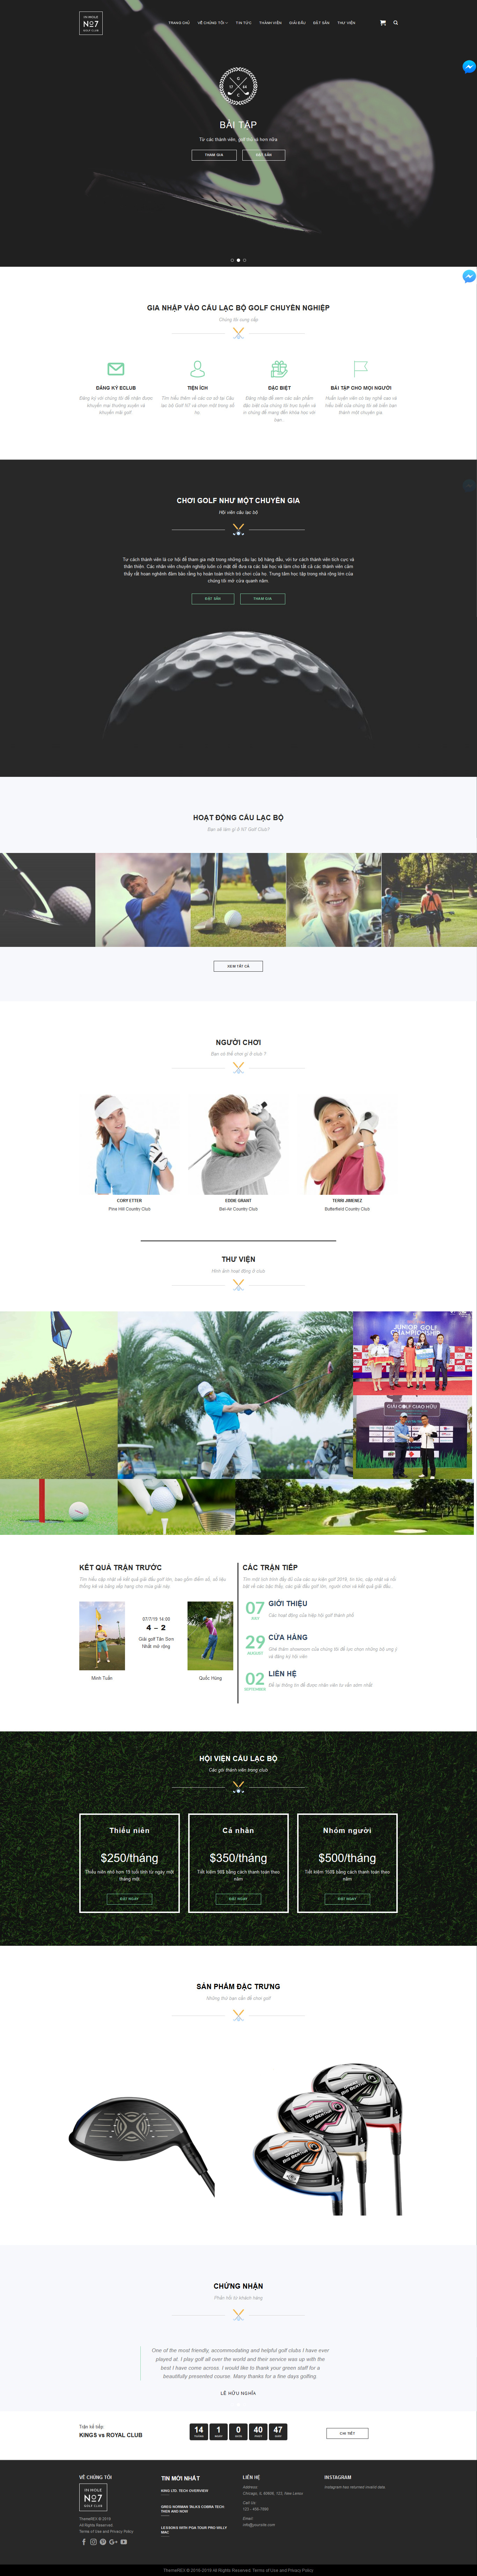 Mẫu website giới thiệu sân golf tương tự No7